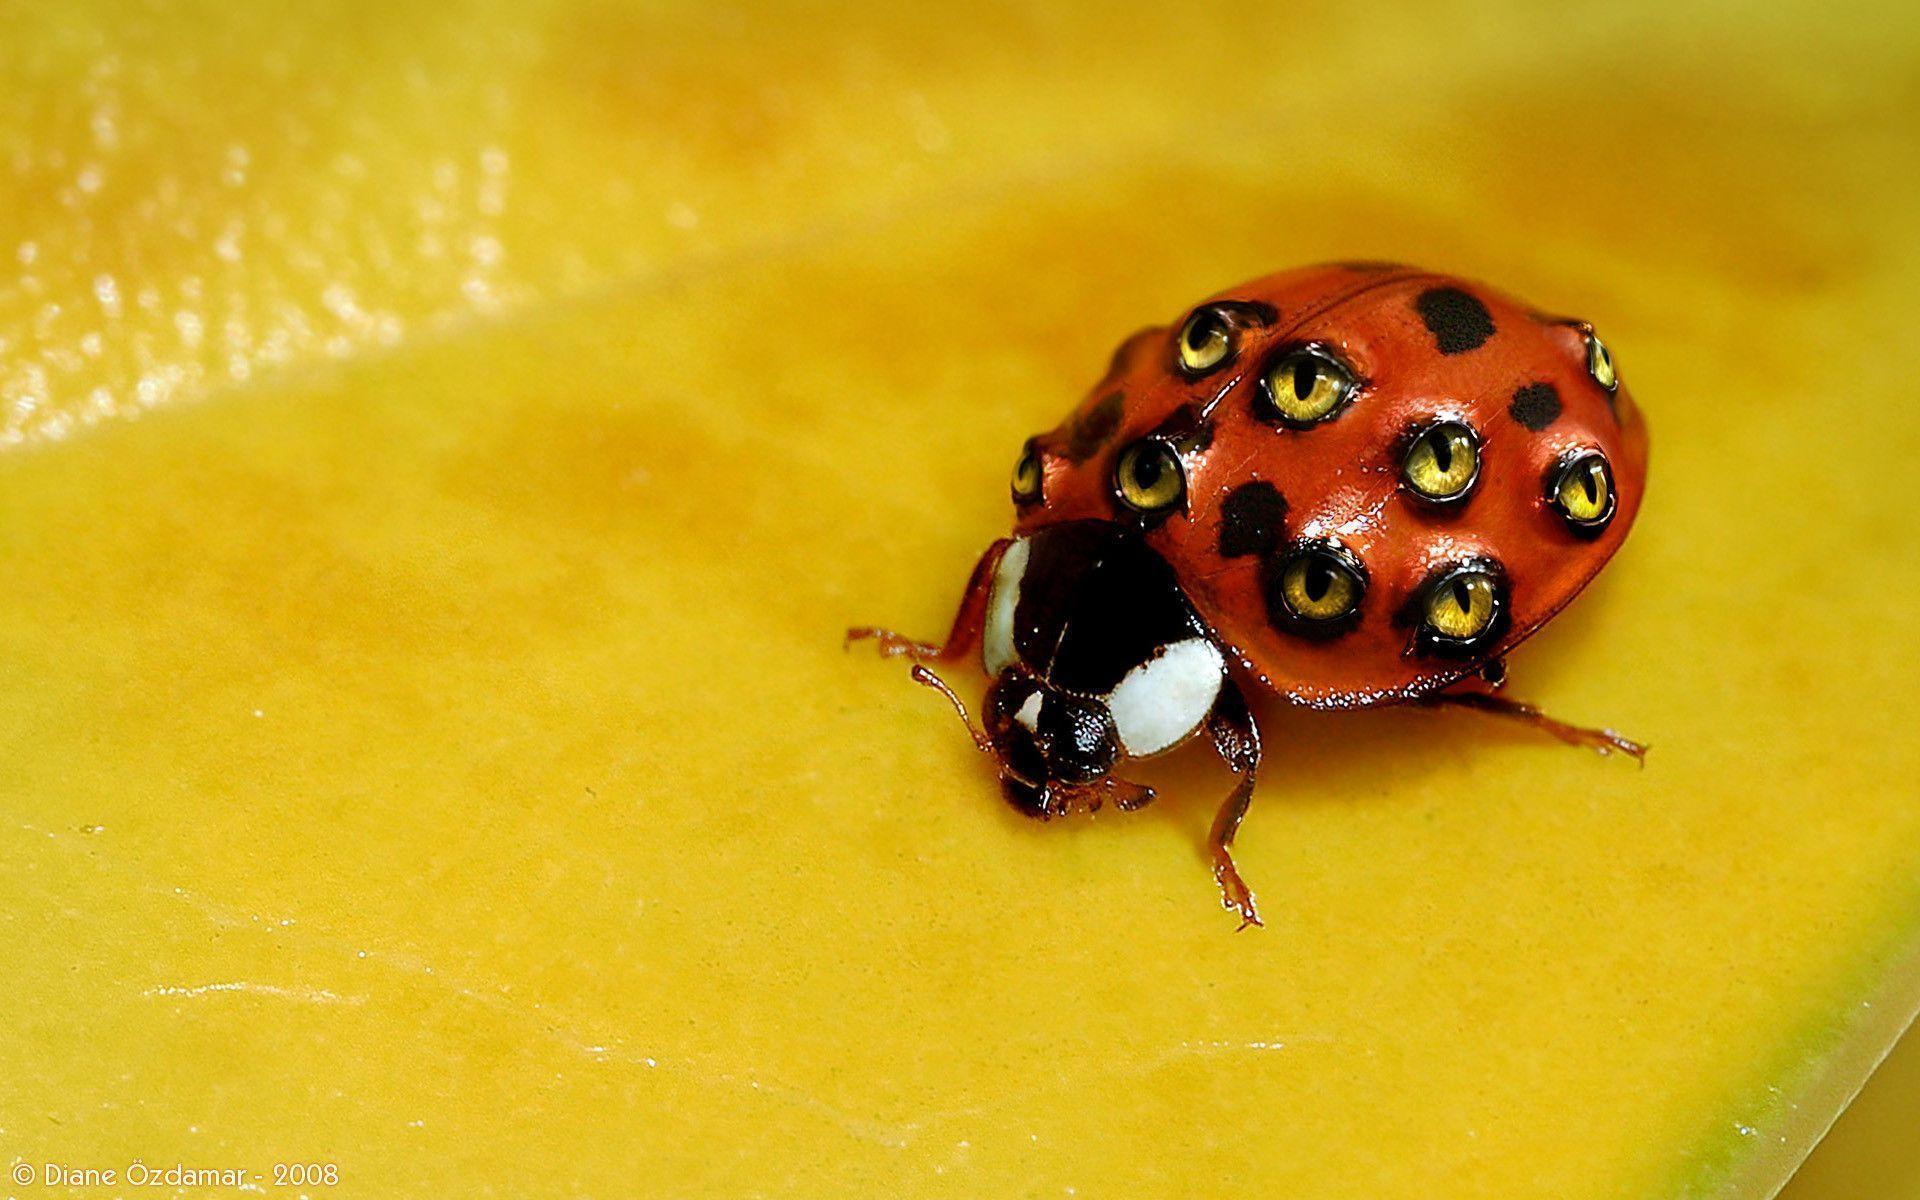 Weird Ladybug wallpapers